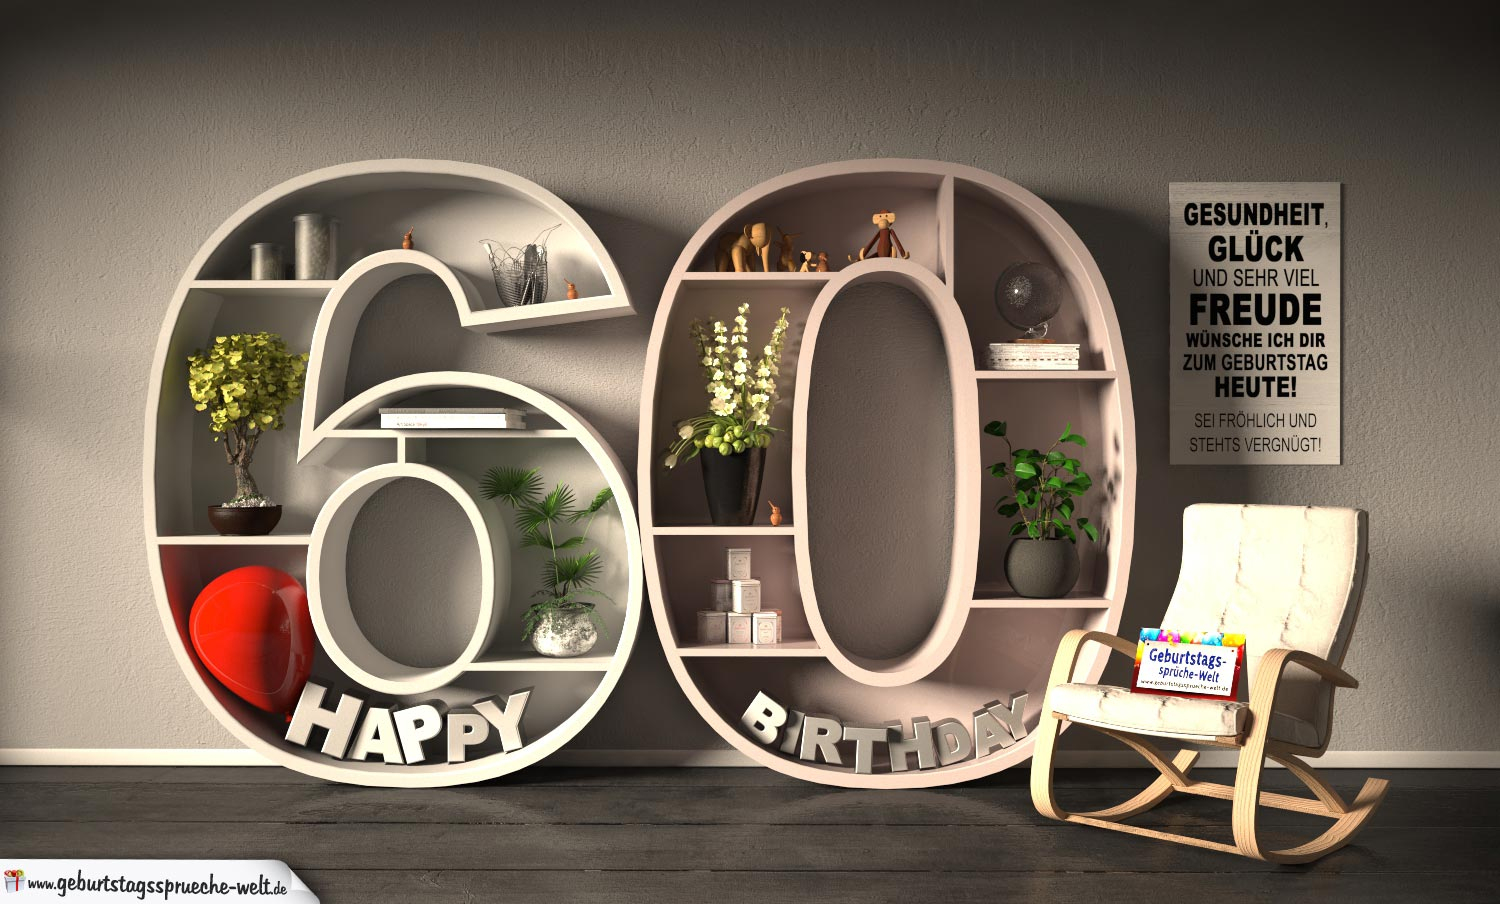 Kostenlose Geburtstagskarte Happy Birthday Mit Spruch Zum 60 für Geburtstagskarte 60 Jahre Kostenlos